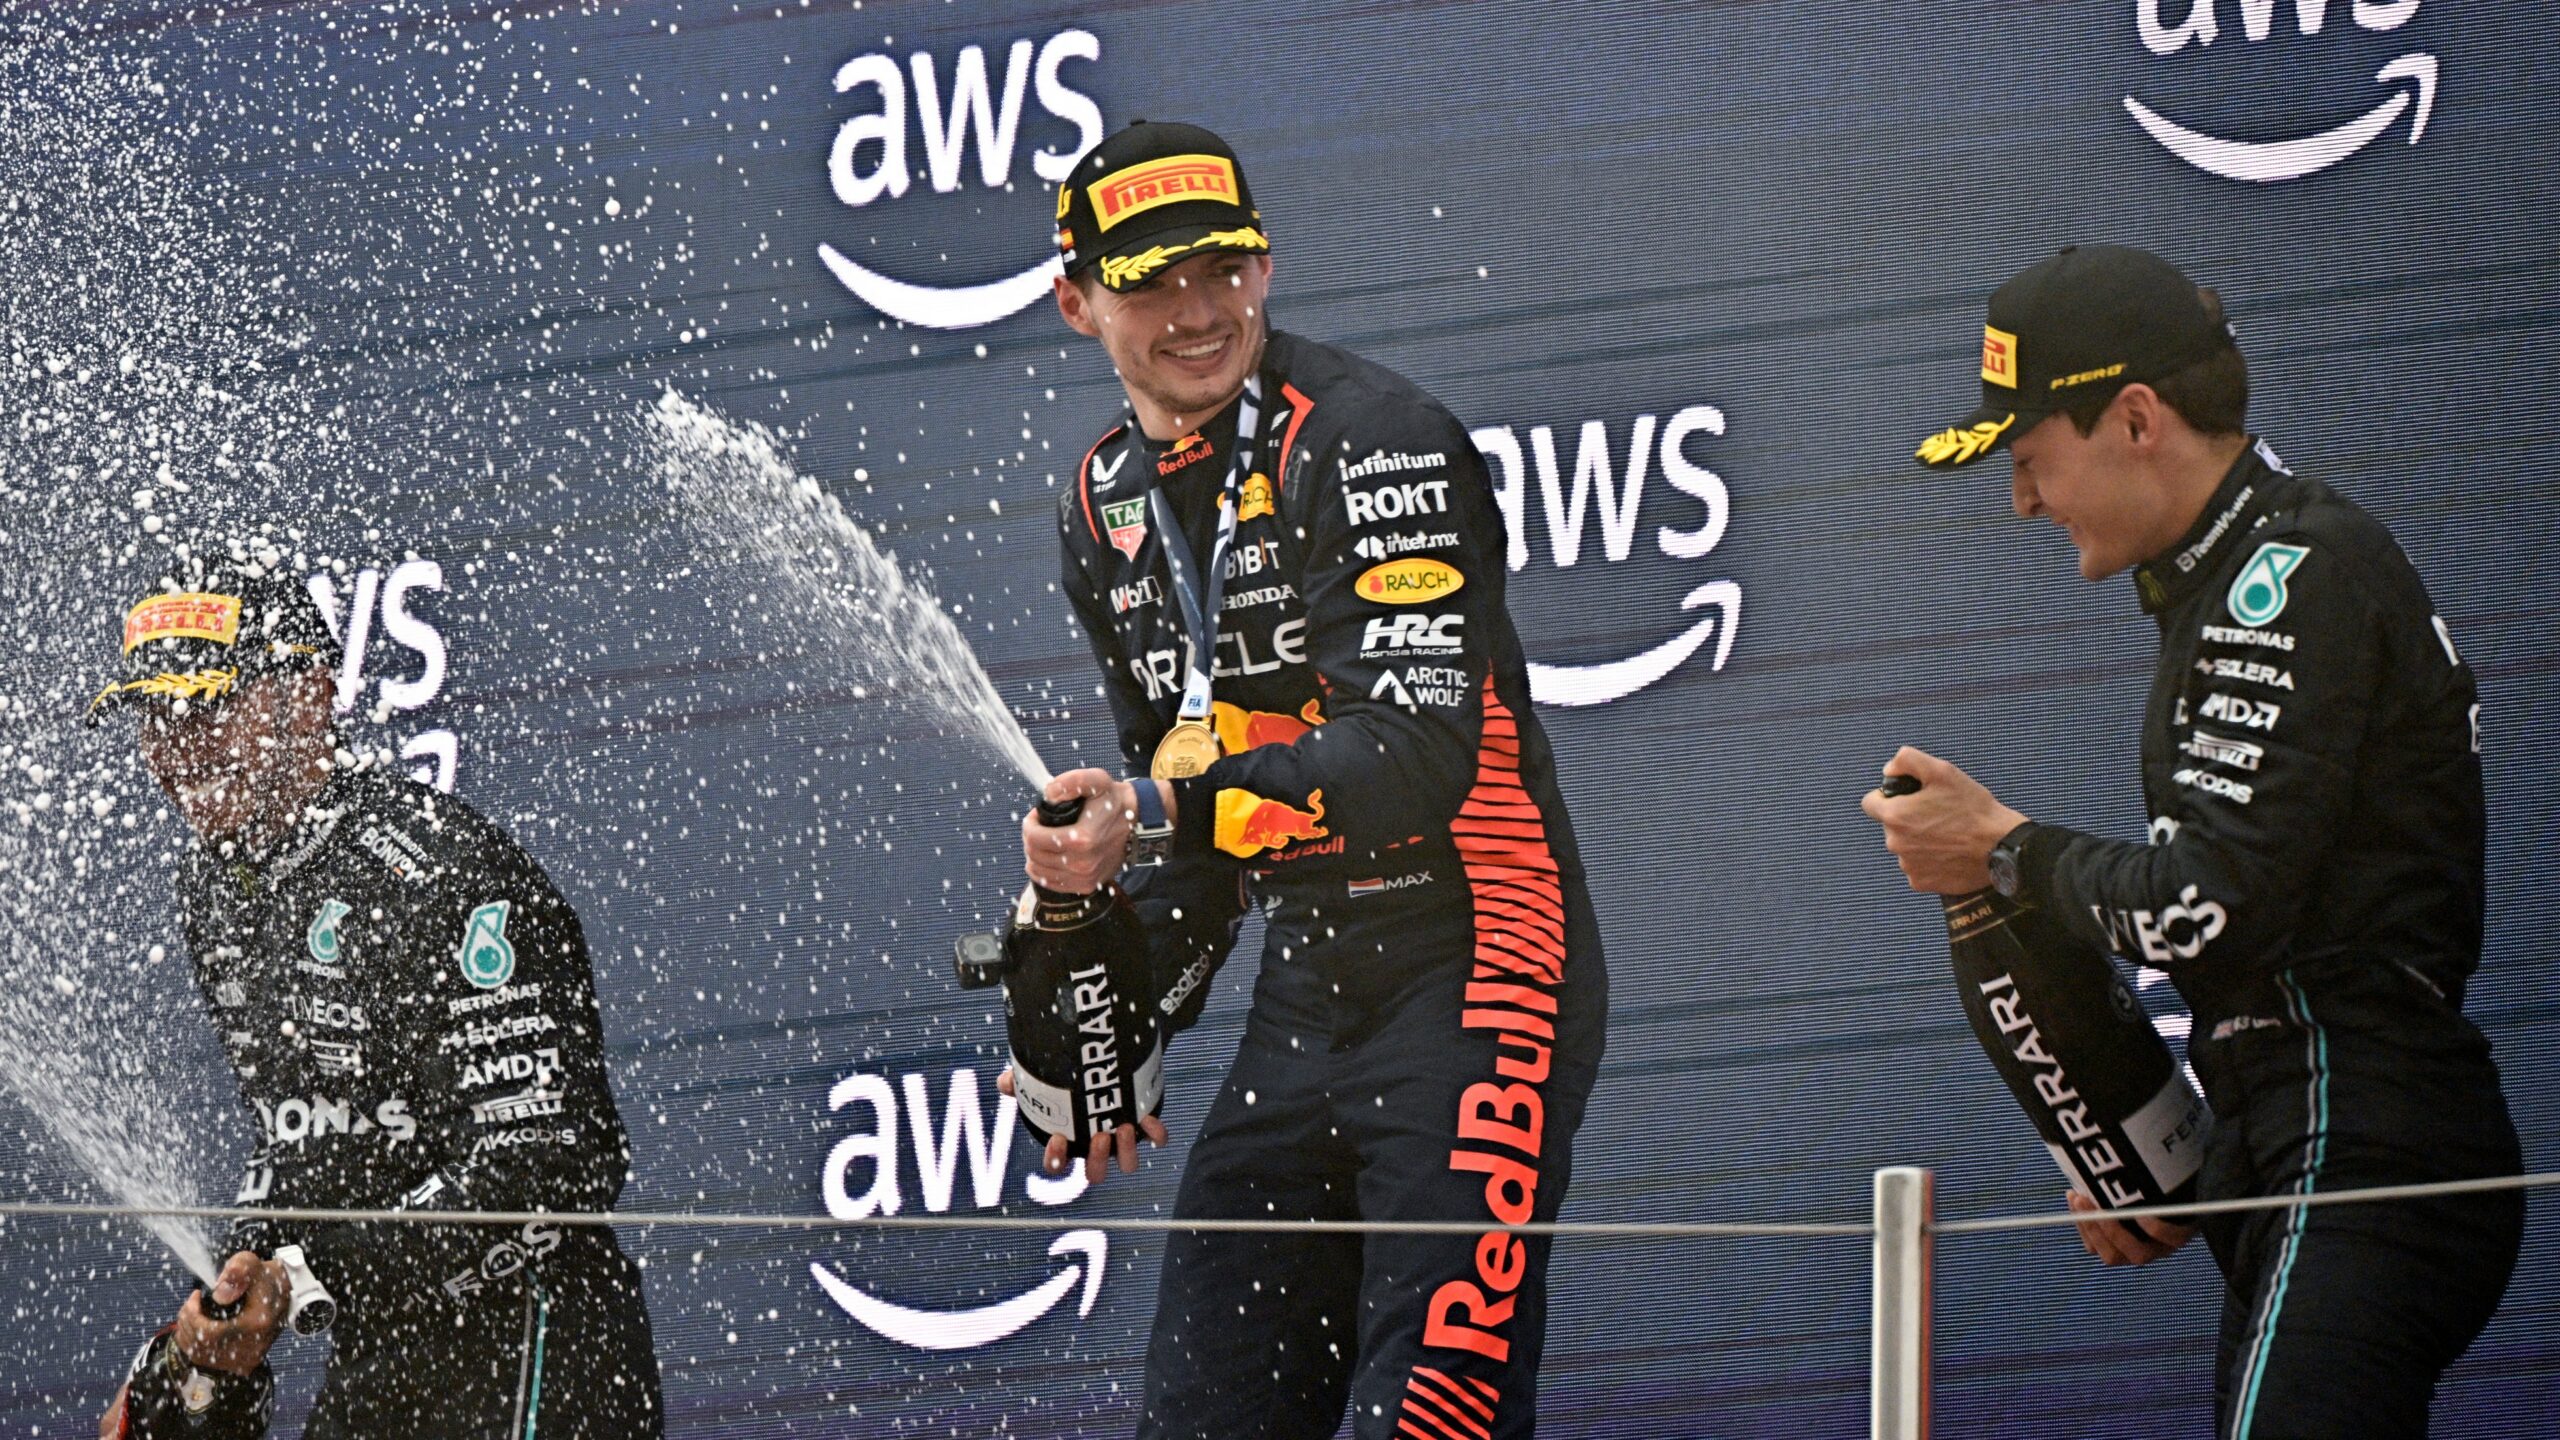 Esta é a sexta vitória de Verstappen em oito corridas na temporada, a 41ª na carreira, igualando a marca do brasileiro Ayrton Senna